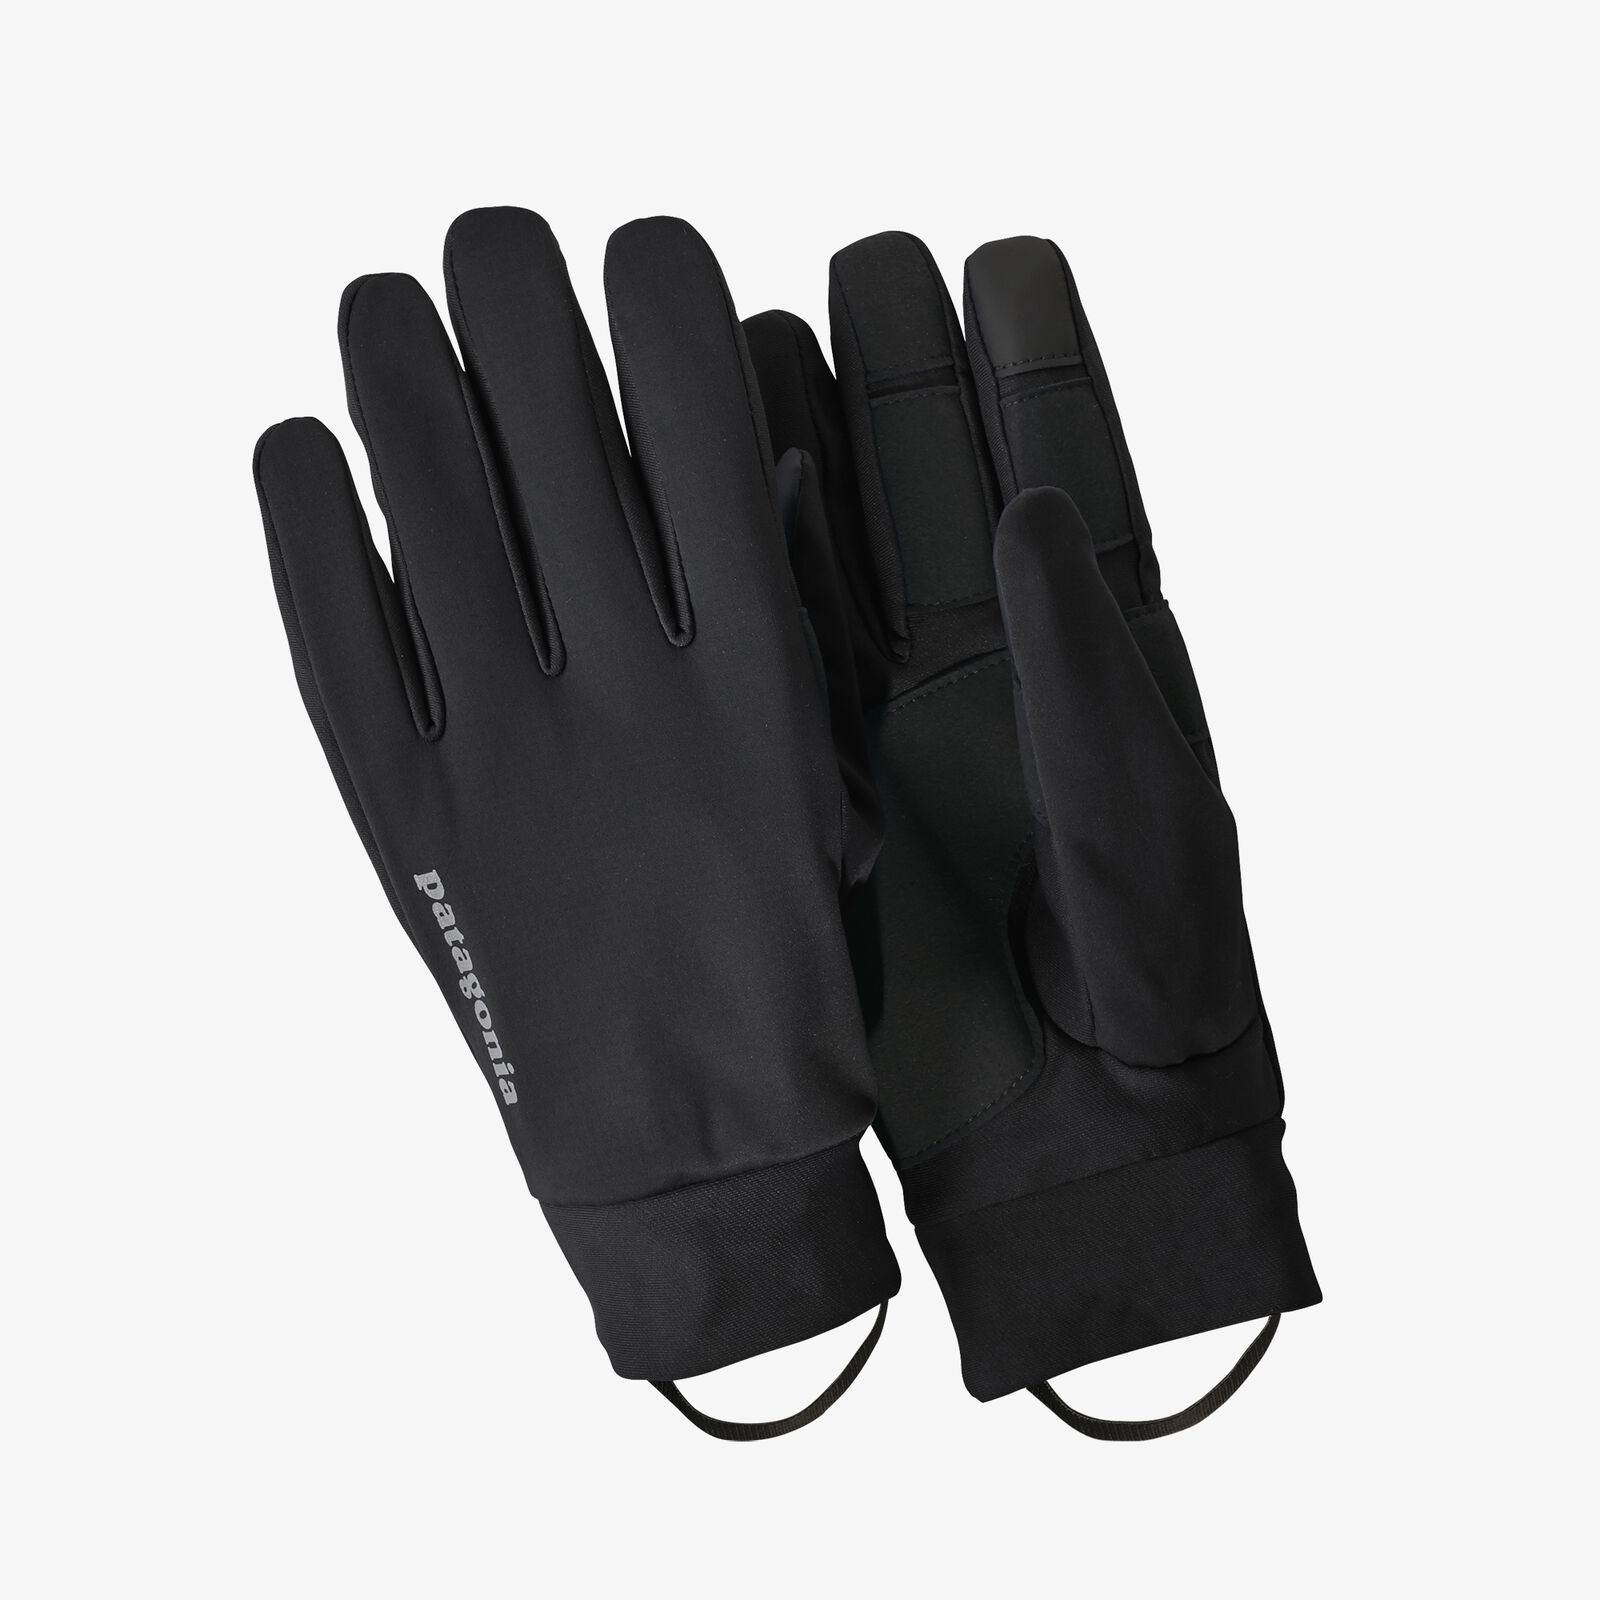 ウインド シールド グローブ パタゴニア公式サイト Wind Shield Gloves